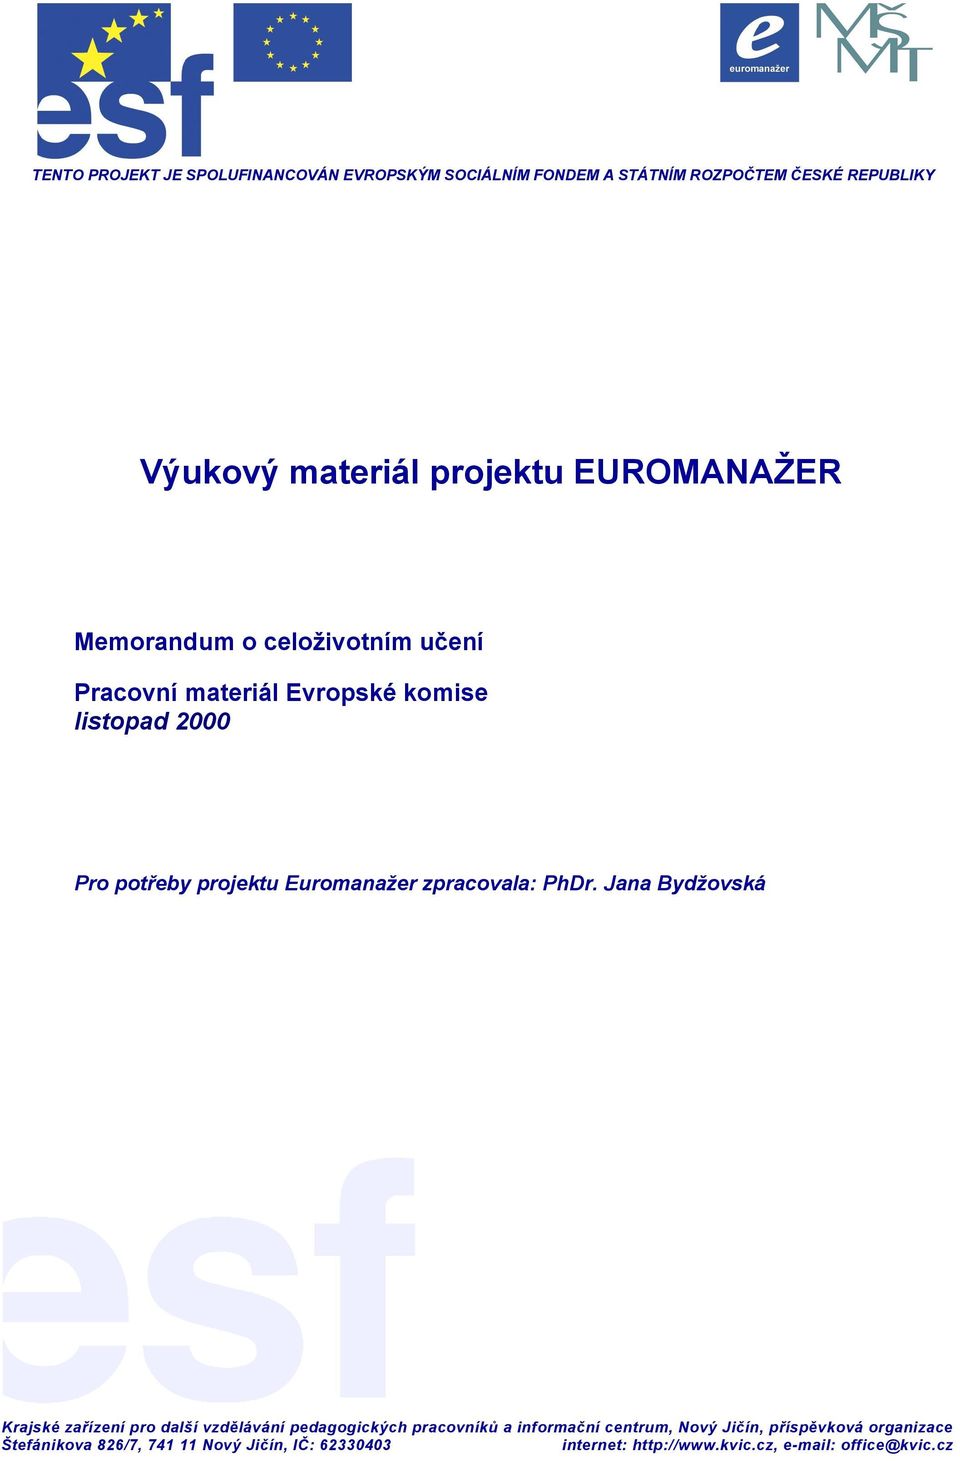 Memorandum o celoživotním učení Pracovní materiál Evropské komise